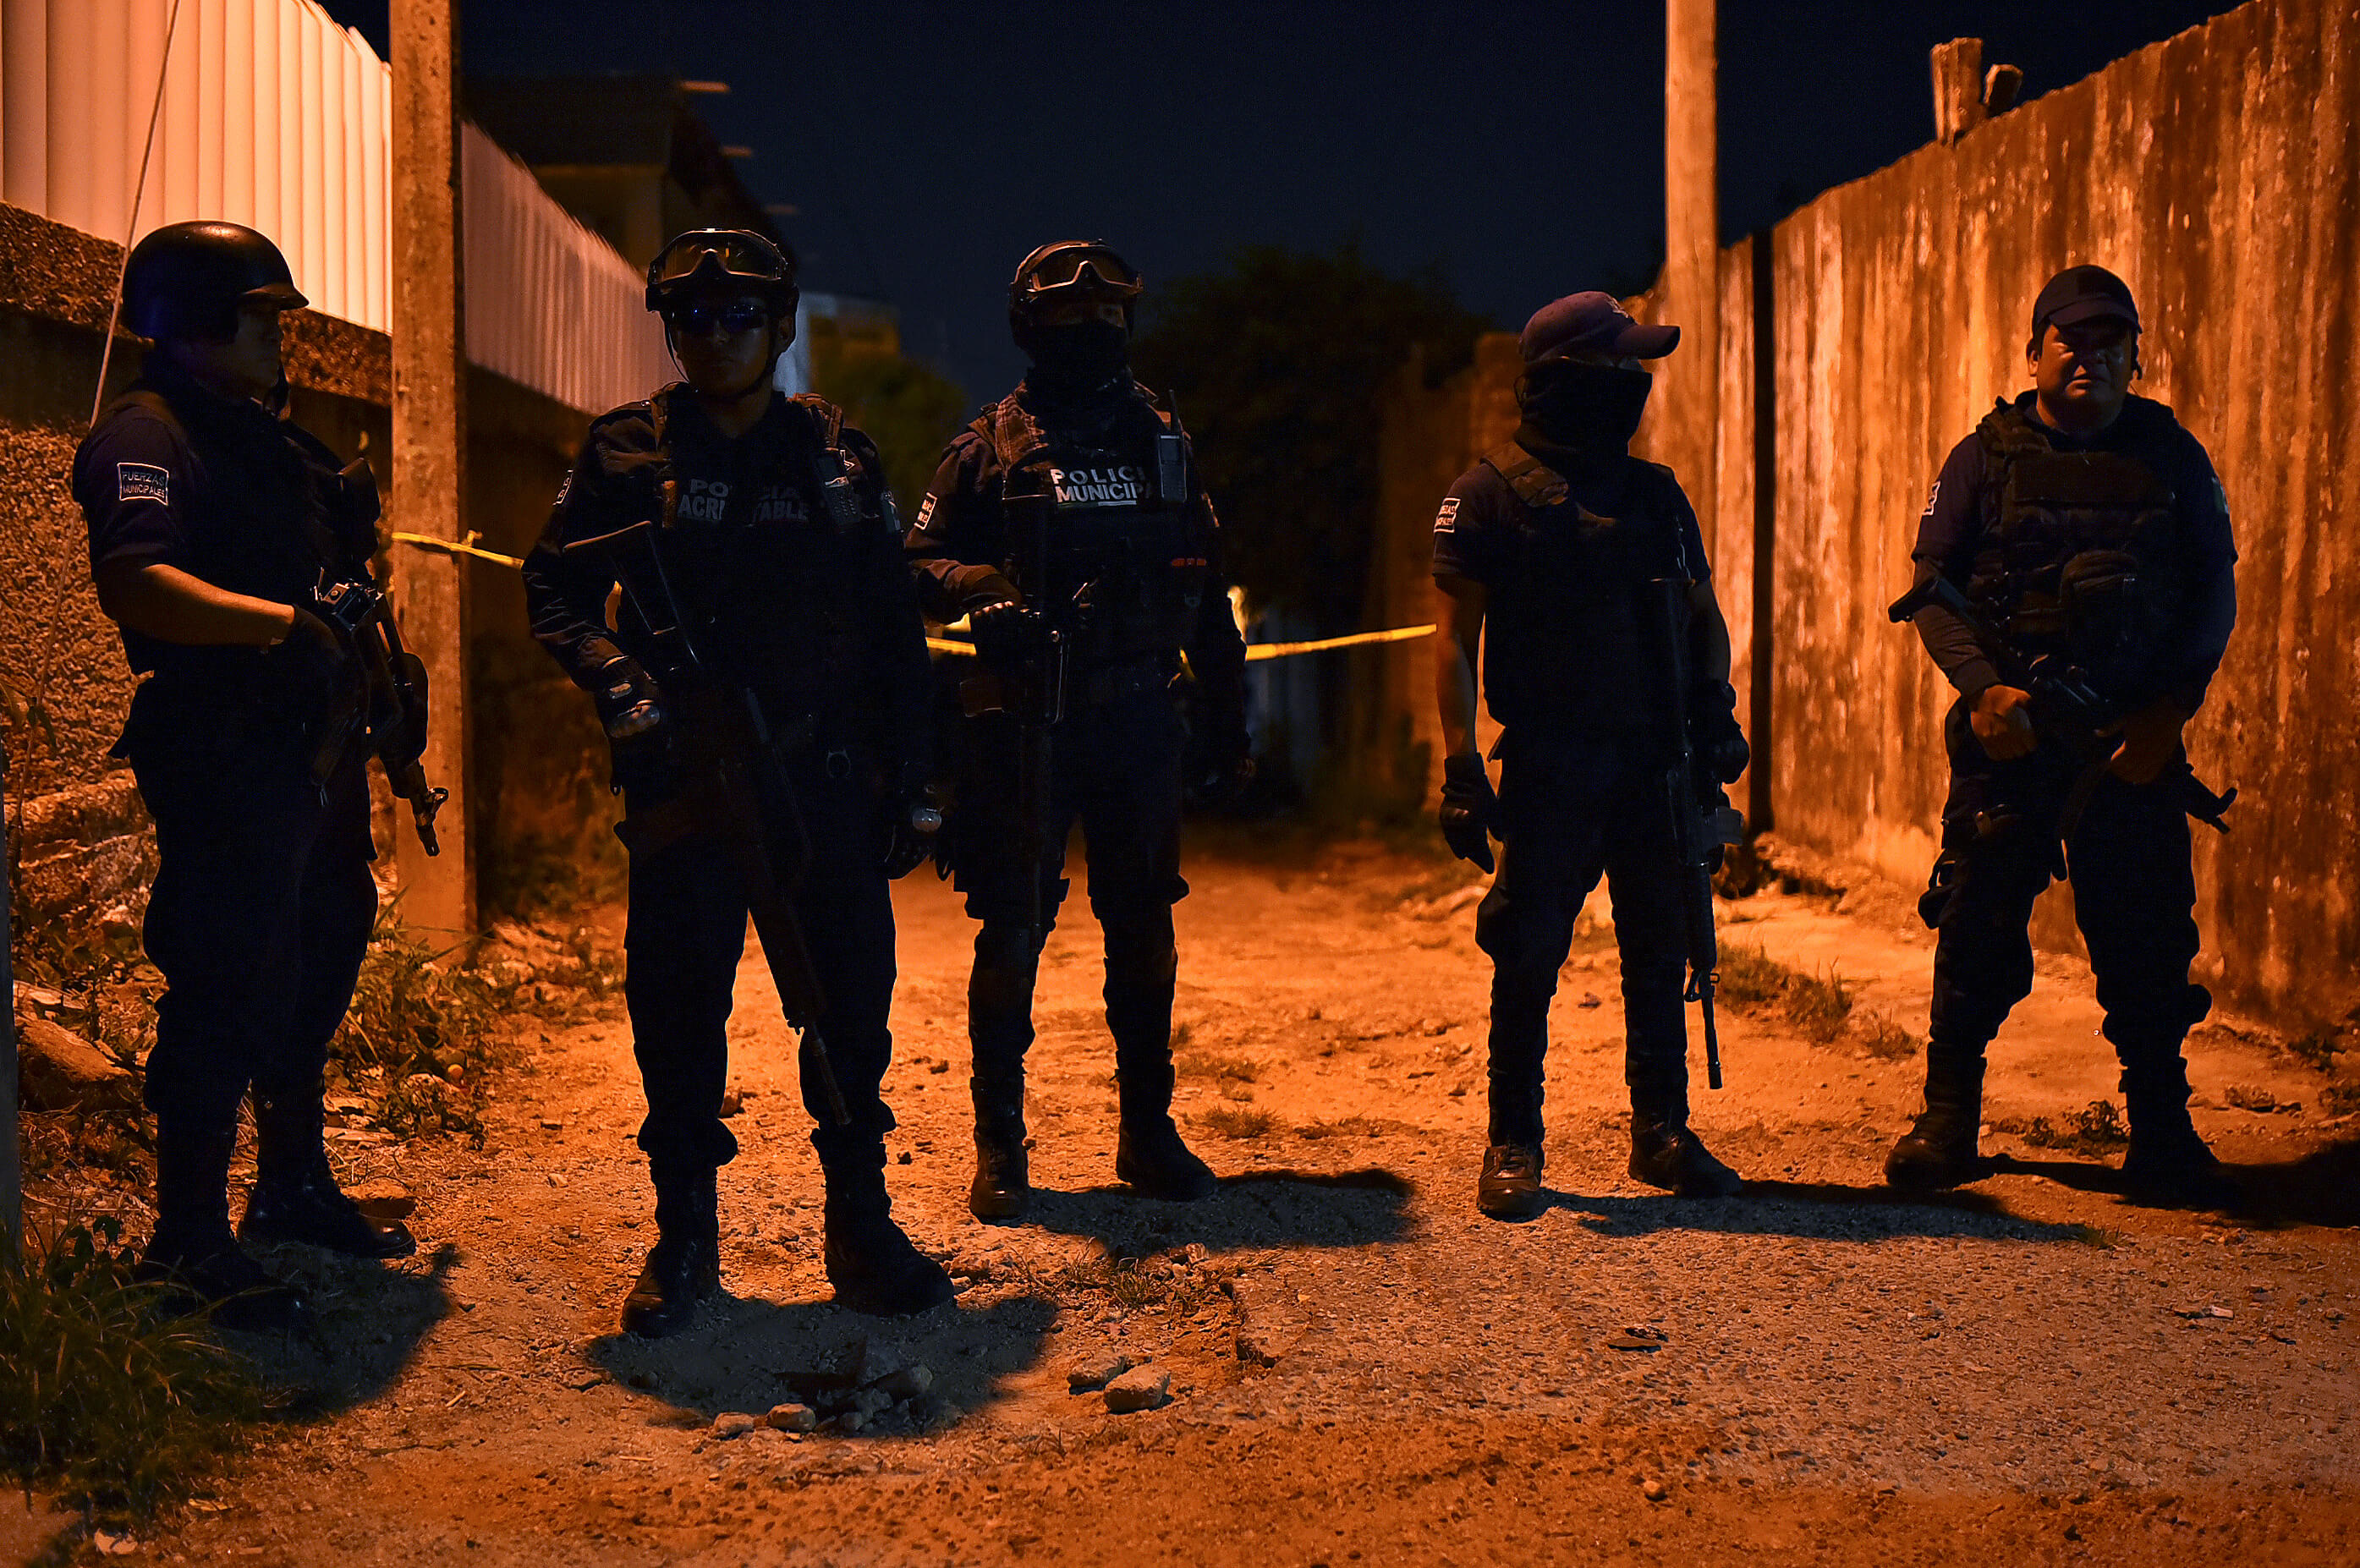 Posible venganza, ataque en Minatitlán: Fiscalía de Veracruz